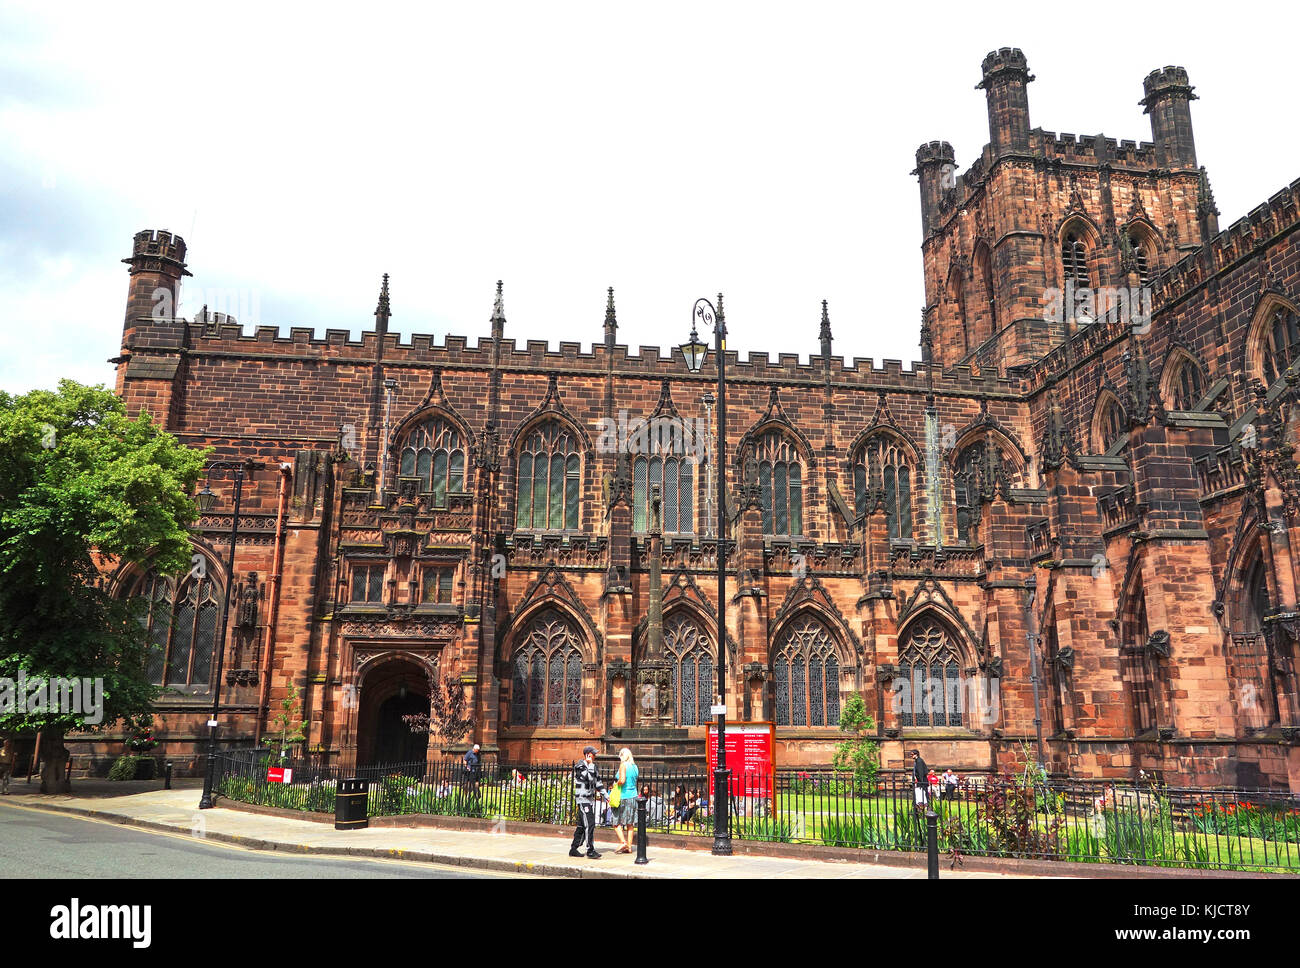 La cathédrale médiévale, la construction a commencé en 1092, Chester, Cheshire, Angleterre, Grande-Bretagne, Royaume-Uni. Banque D'Images